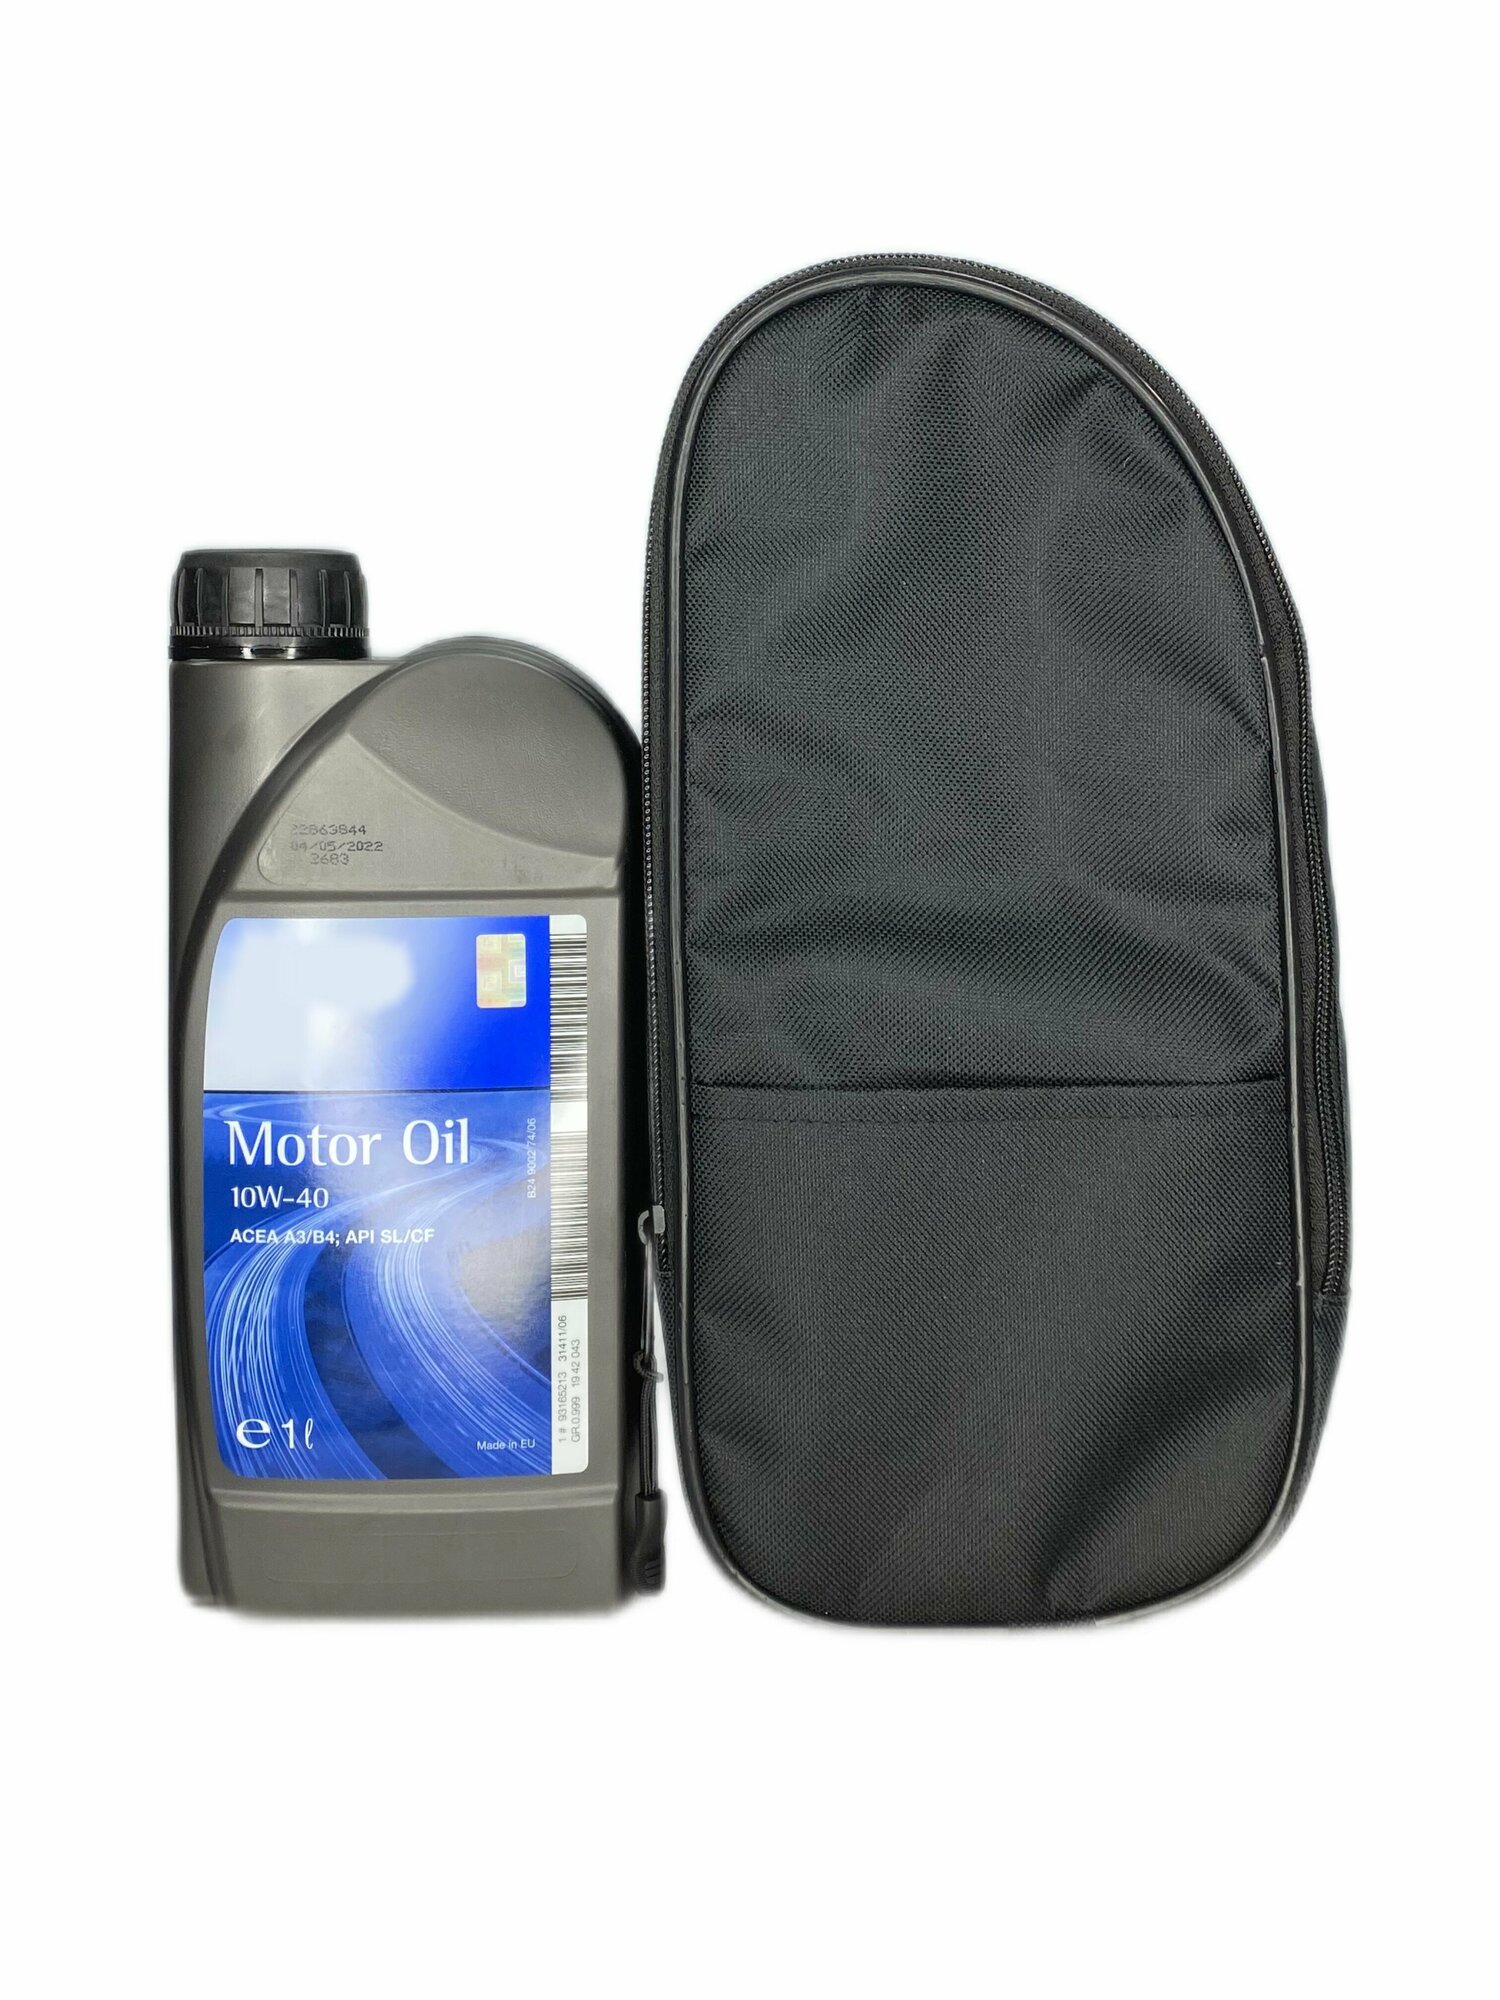 Чехол-сумка AvtoPoryadok для хранения канистр в багажнике автомобиля черная.